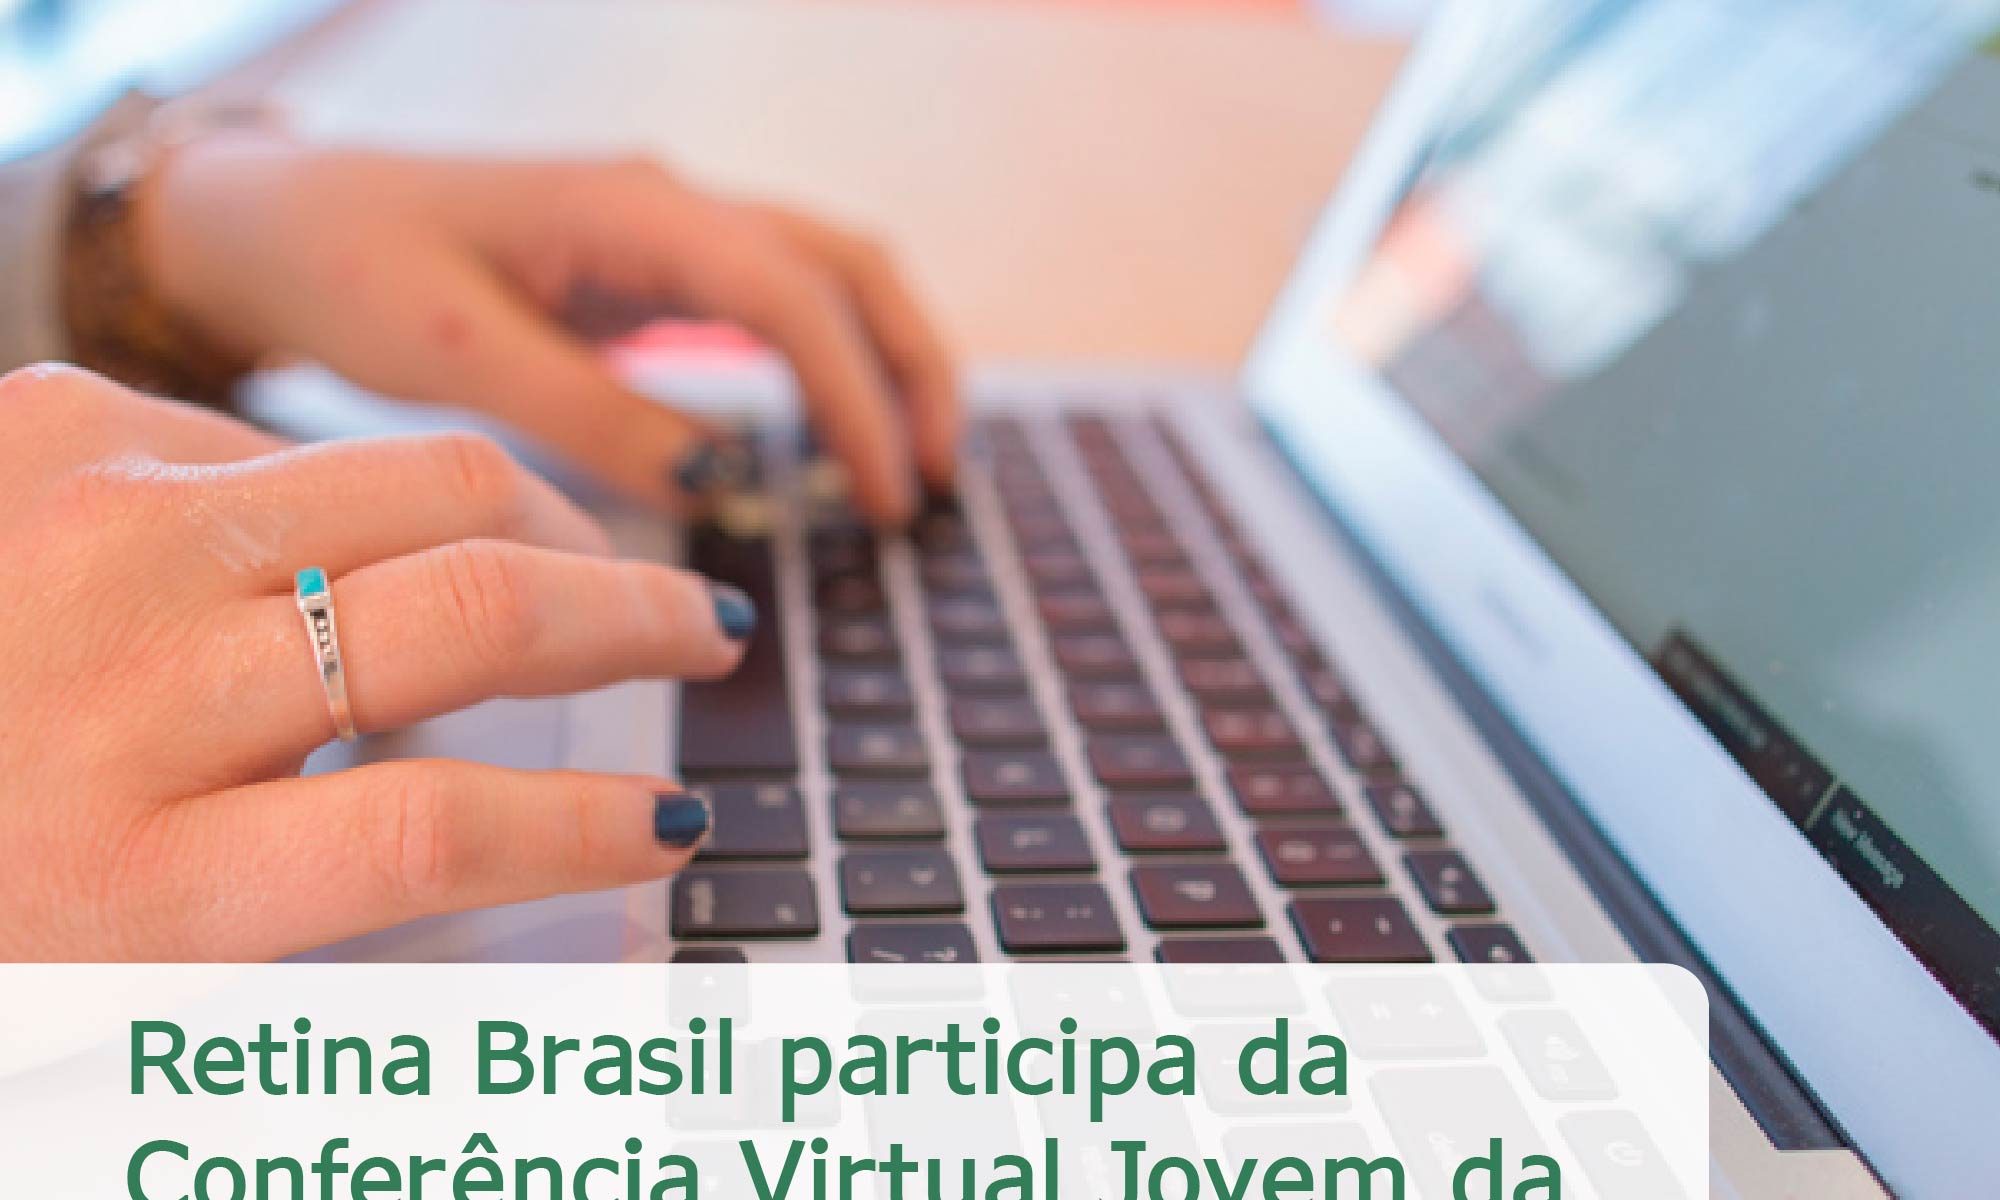 #DescriçãoDaImagem. A imagem mostra as mãos de uma pessoa digitando em um notebook. Está escrito: "Retina Brasil participa da Conferência Virtual Jovem da Retina Internacional 2020" e há a logo da Retina Brasil.